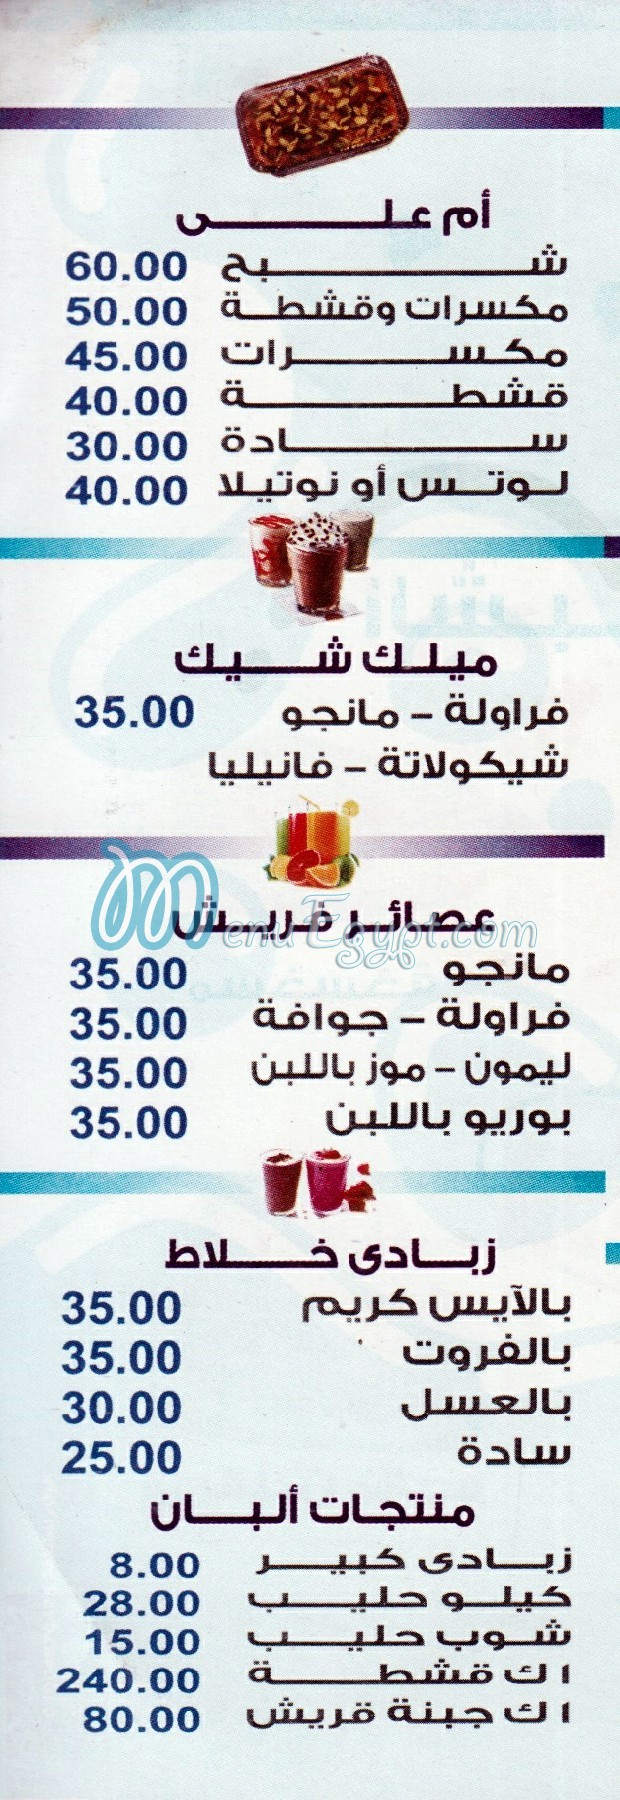 Al Malky menu